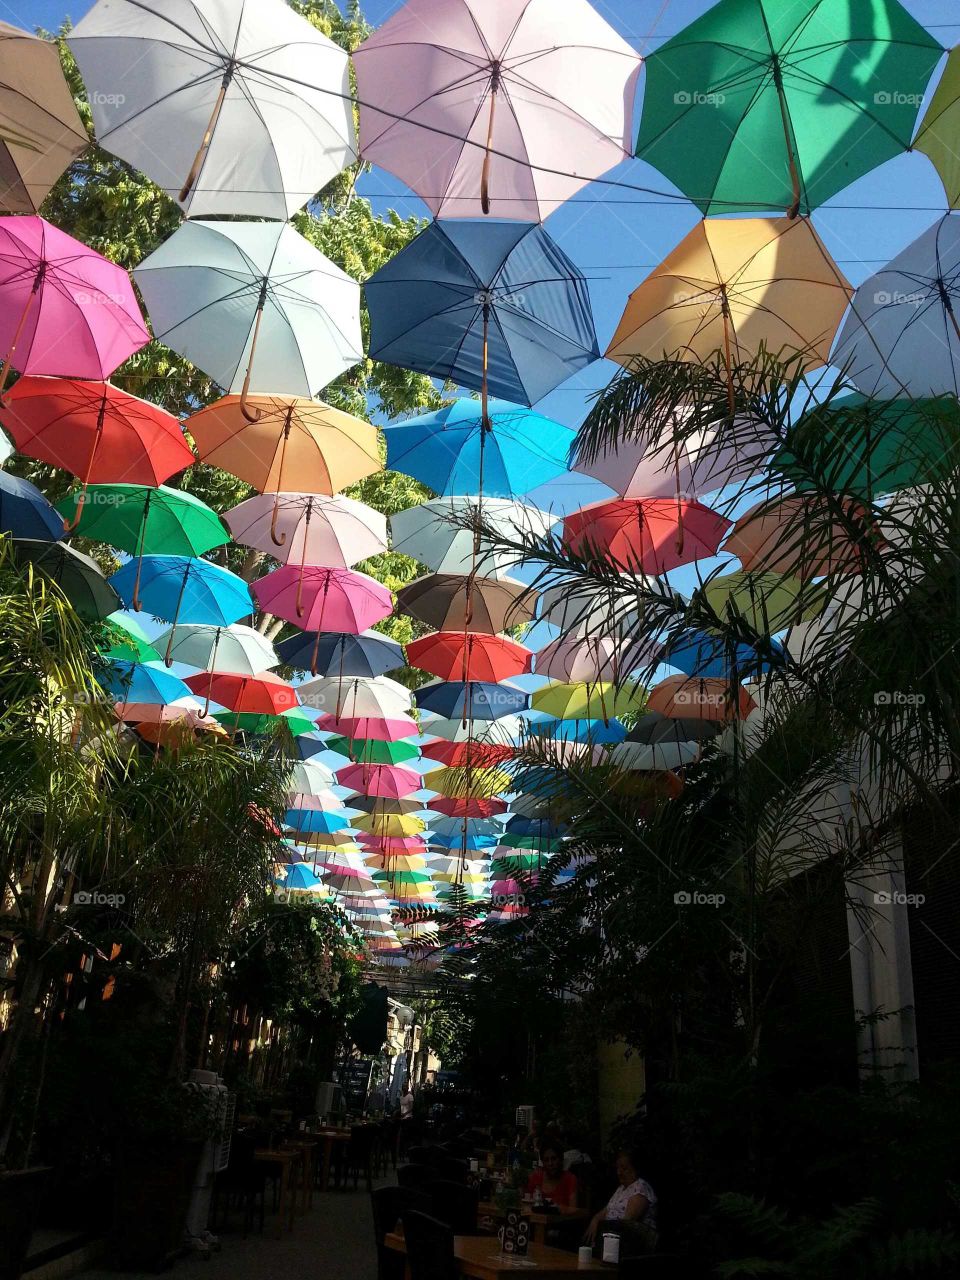 Under Cyprus umbrella